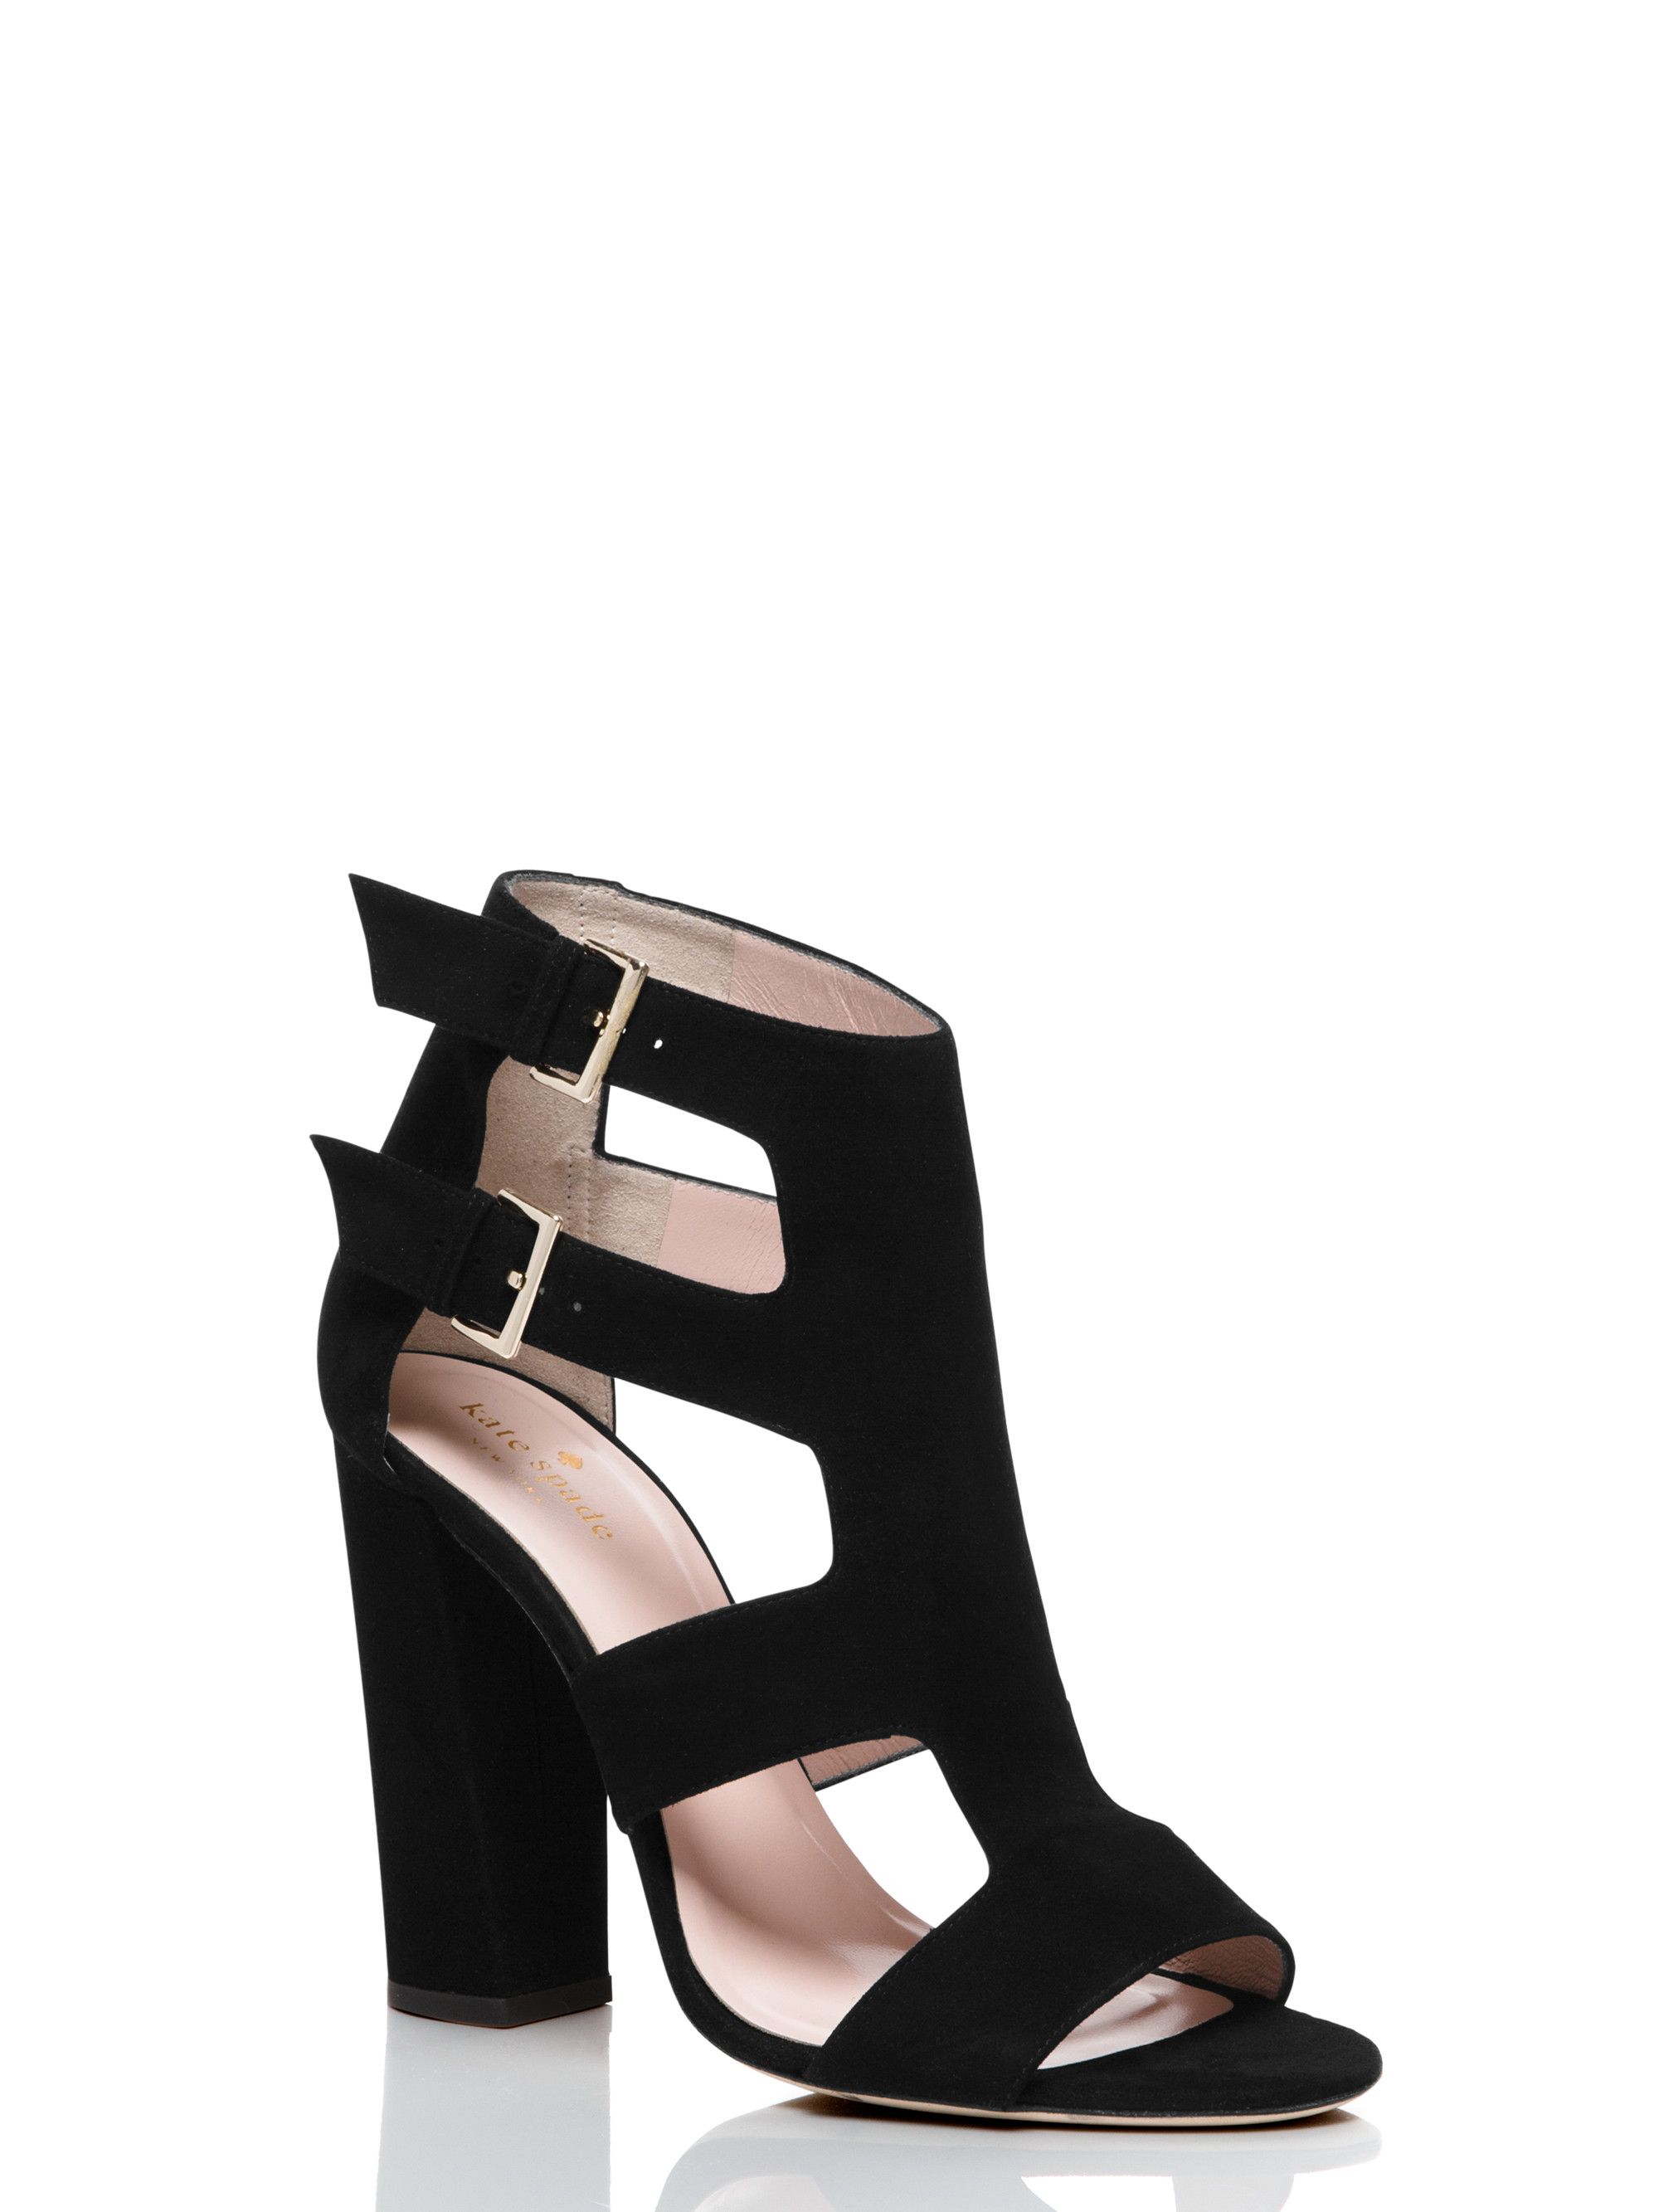 ilemi heels | Kate Spade US